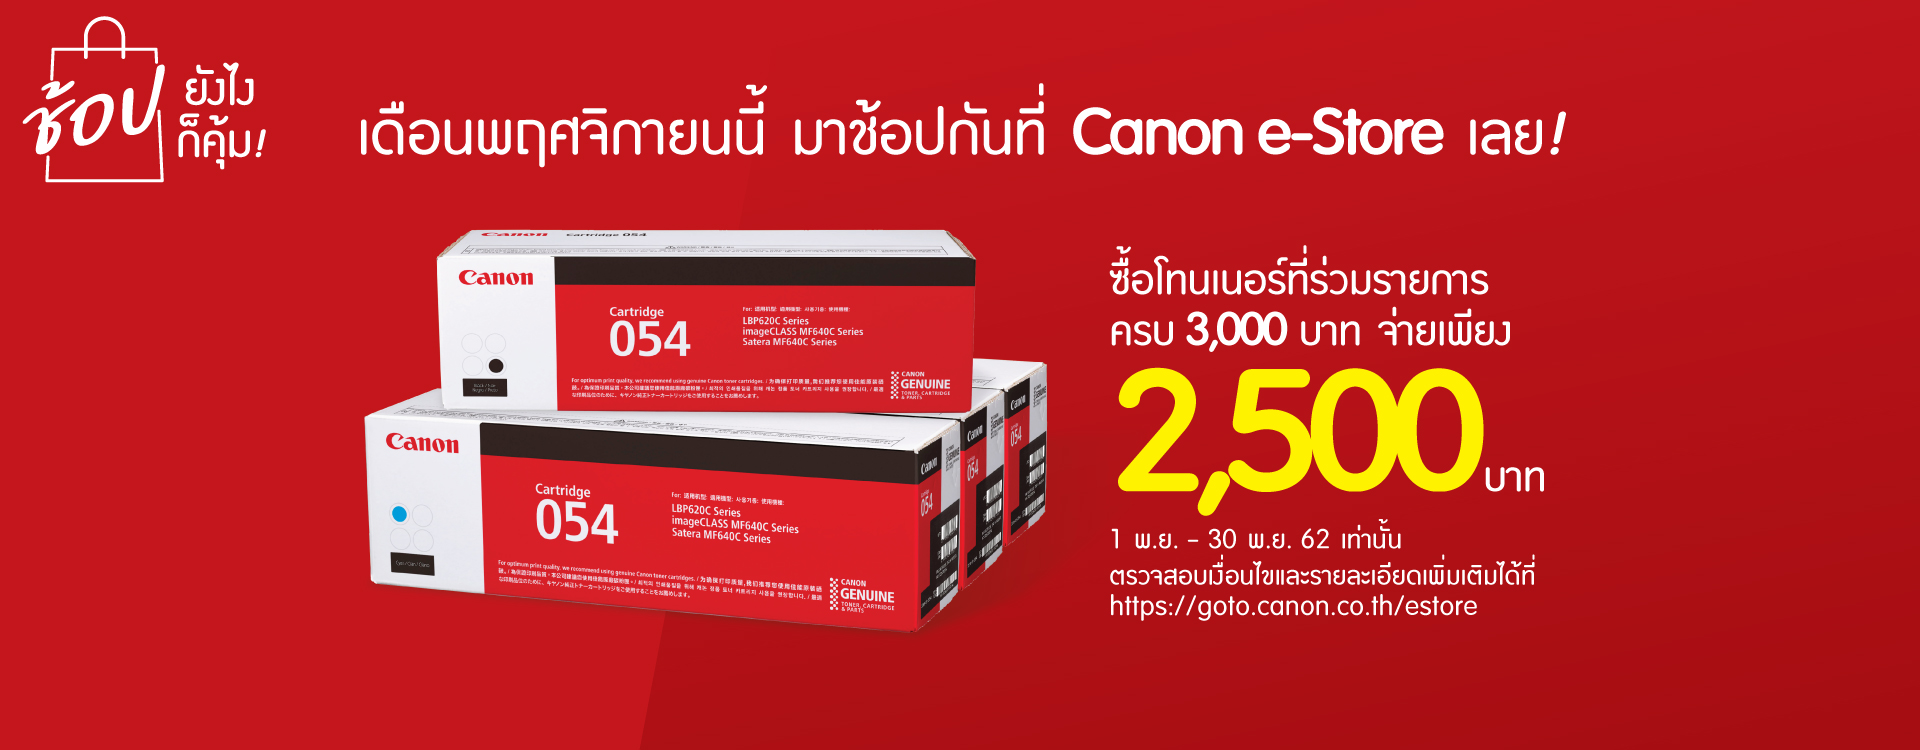 Home Canon Thailand - roblox promo codes 2018 september raclame